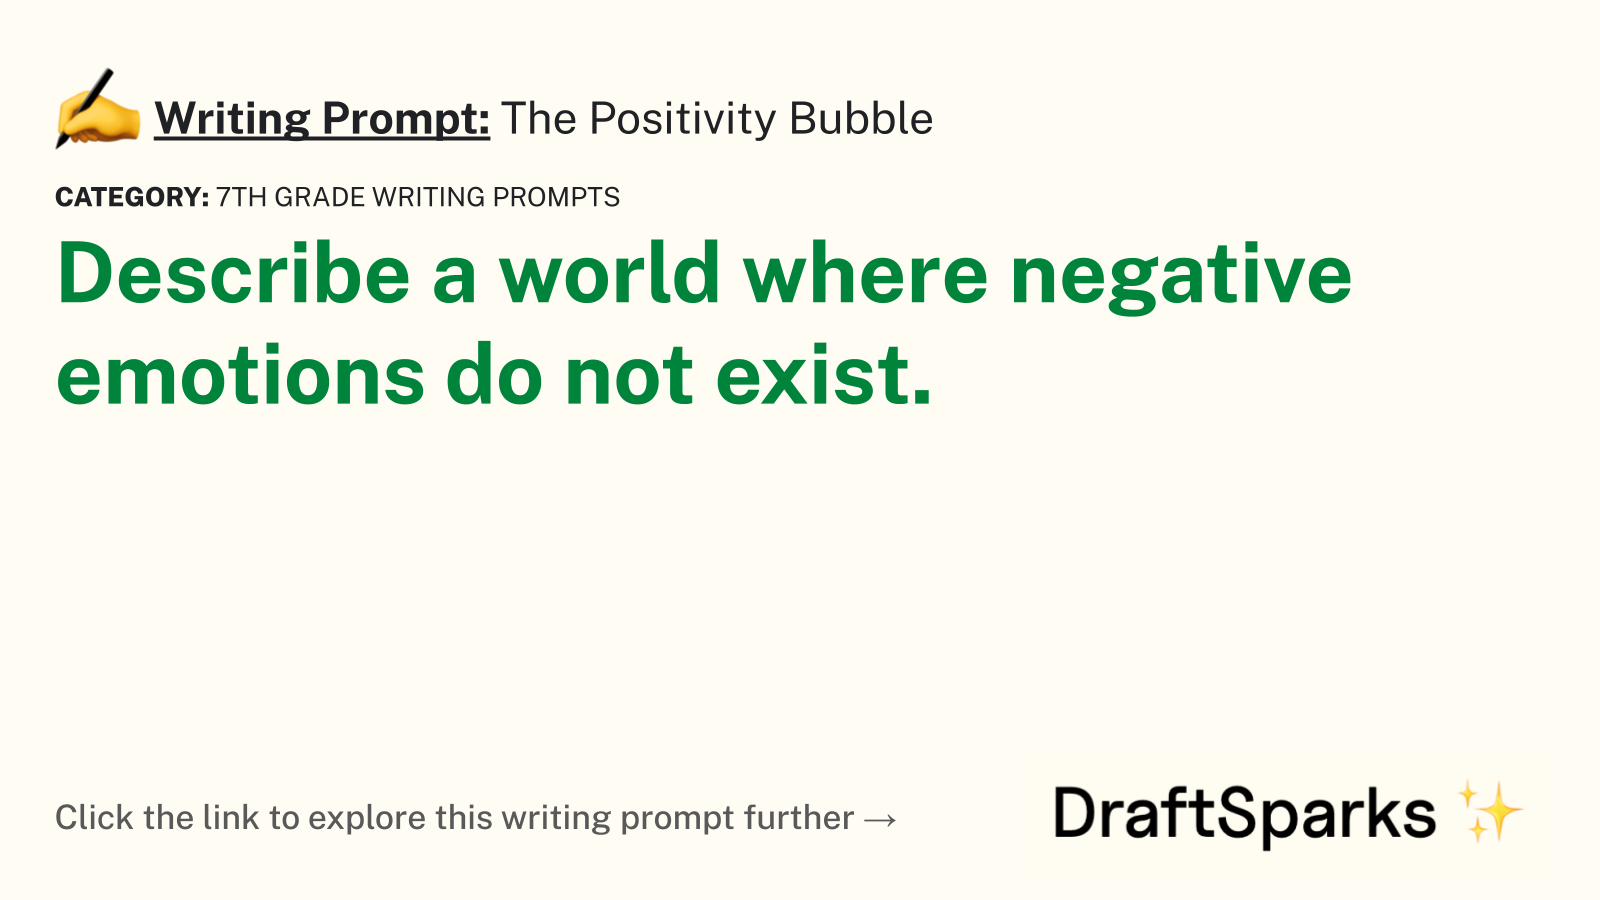 The Positivity Bubble